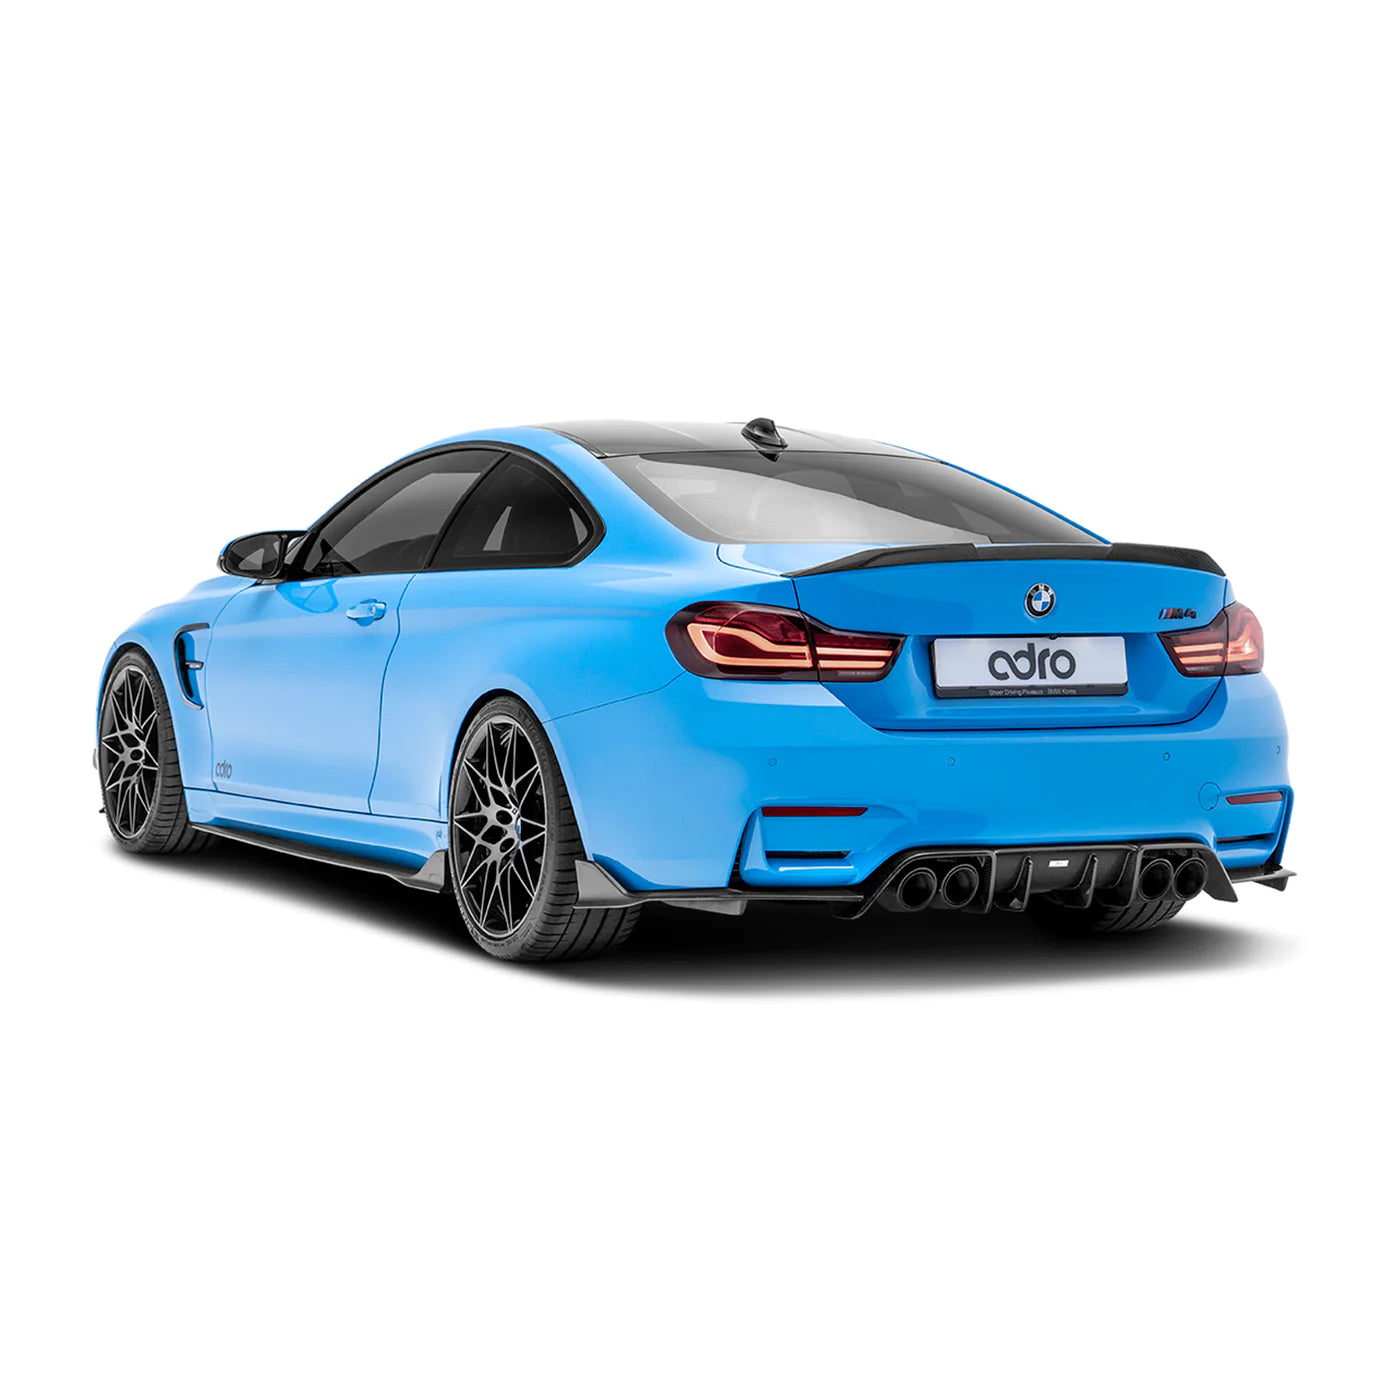 BMW M3 F80 & M4 F82 F83 Pre-Preg Carbon Fibre Rear Diffuser by Adro (2014-2020), Rear Diffusers, Adro - AUTOID | Premium Automotive Accessories